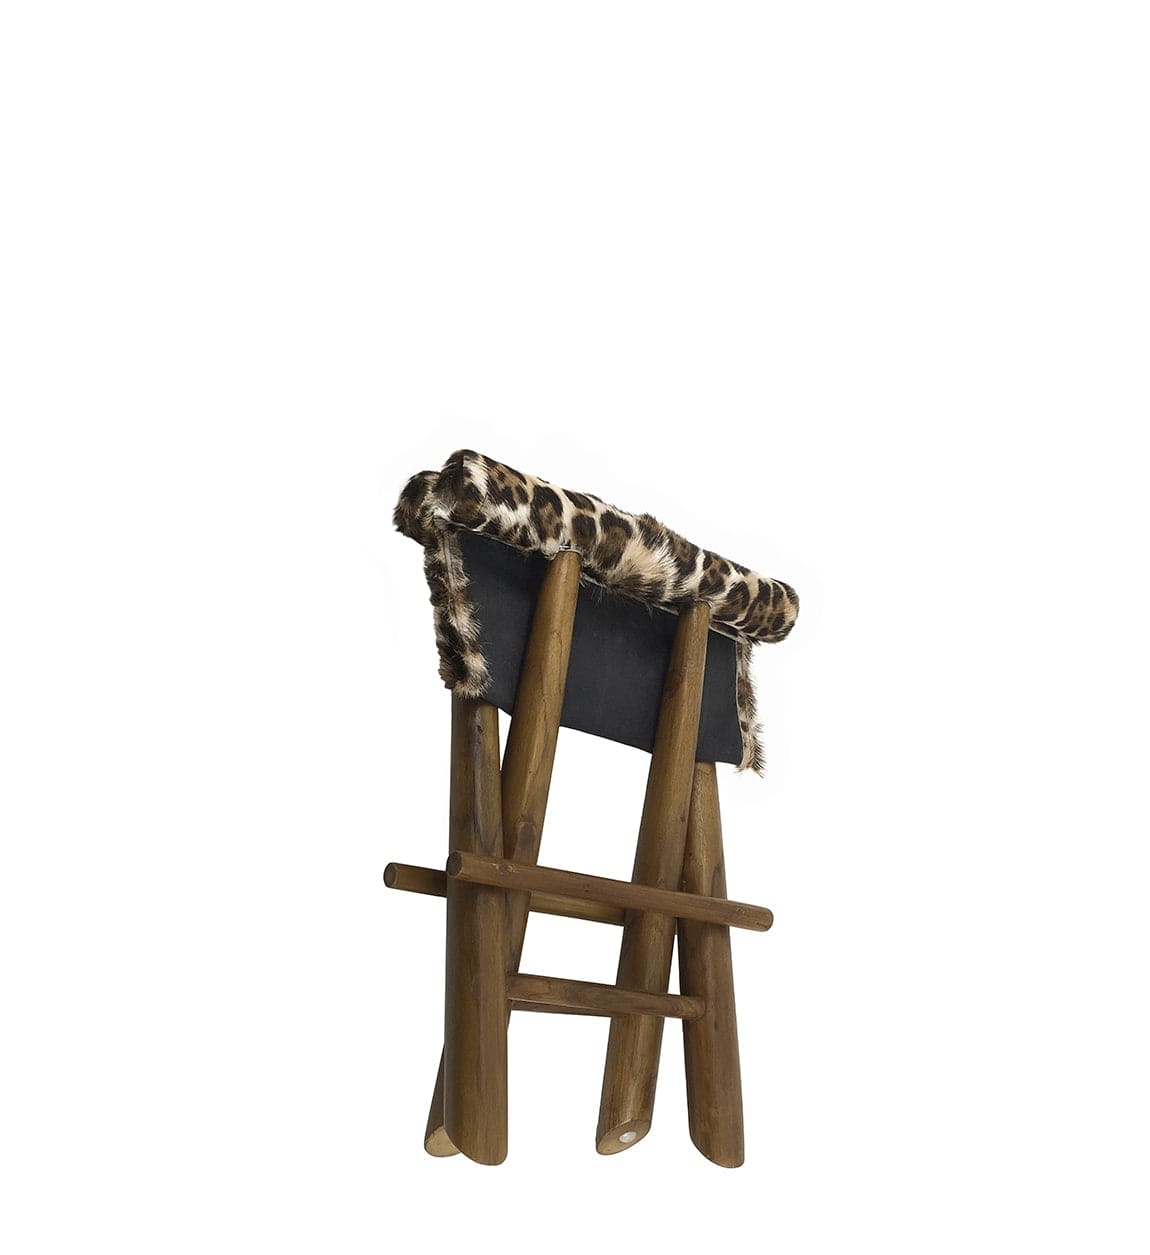 Taburet pliabil tapitat cu piele naturala si picioare din lemn, Leopard Maro / Nuc, l48xA40xH45 cm (1)